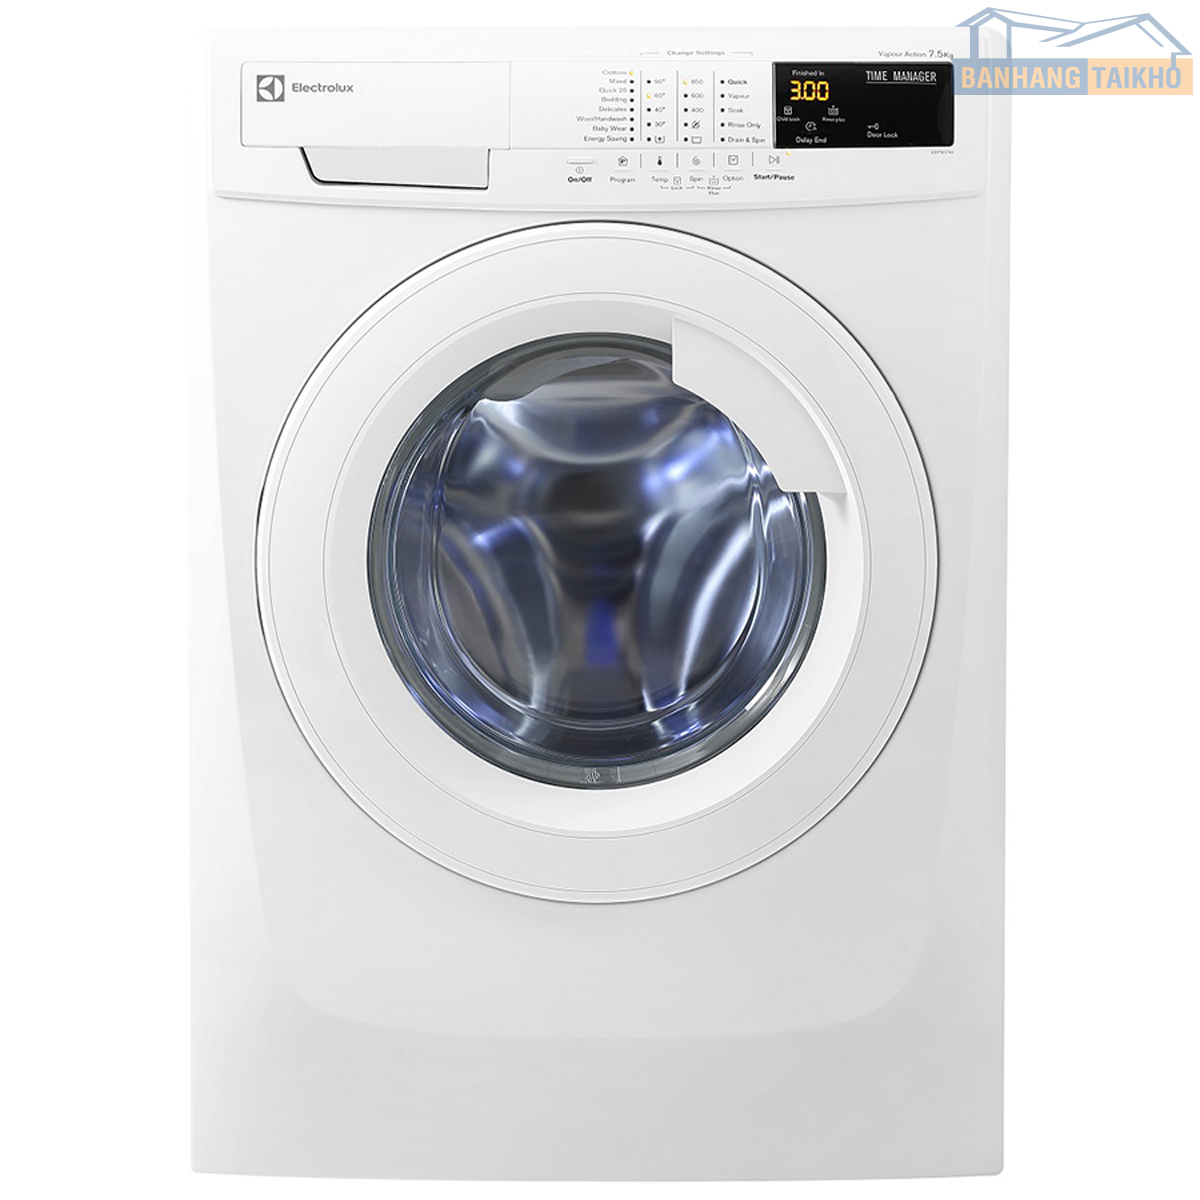 máy giặt electrolux 7kg